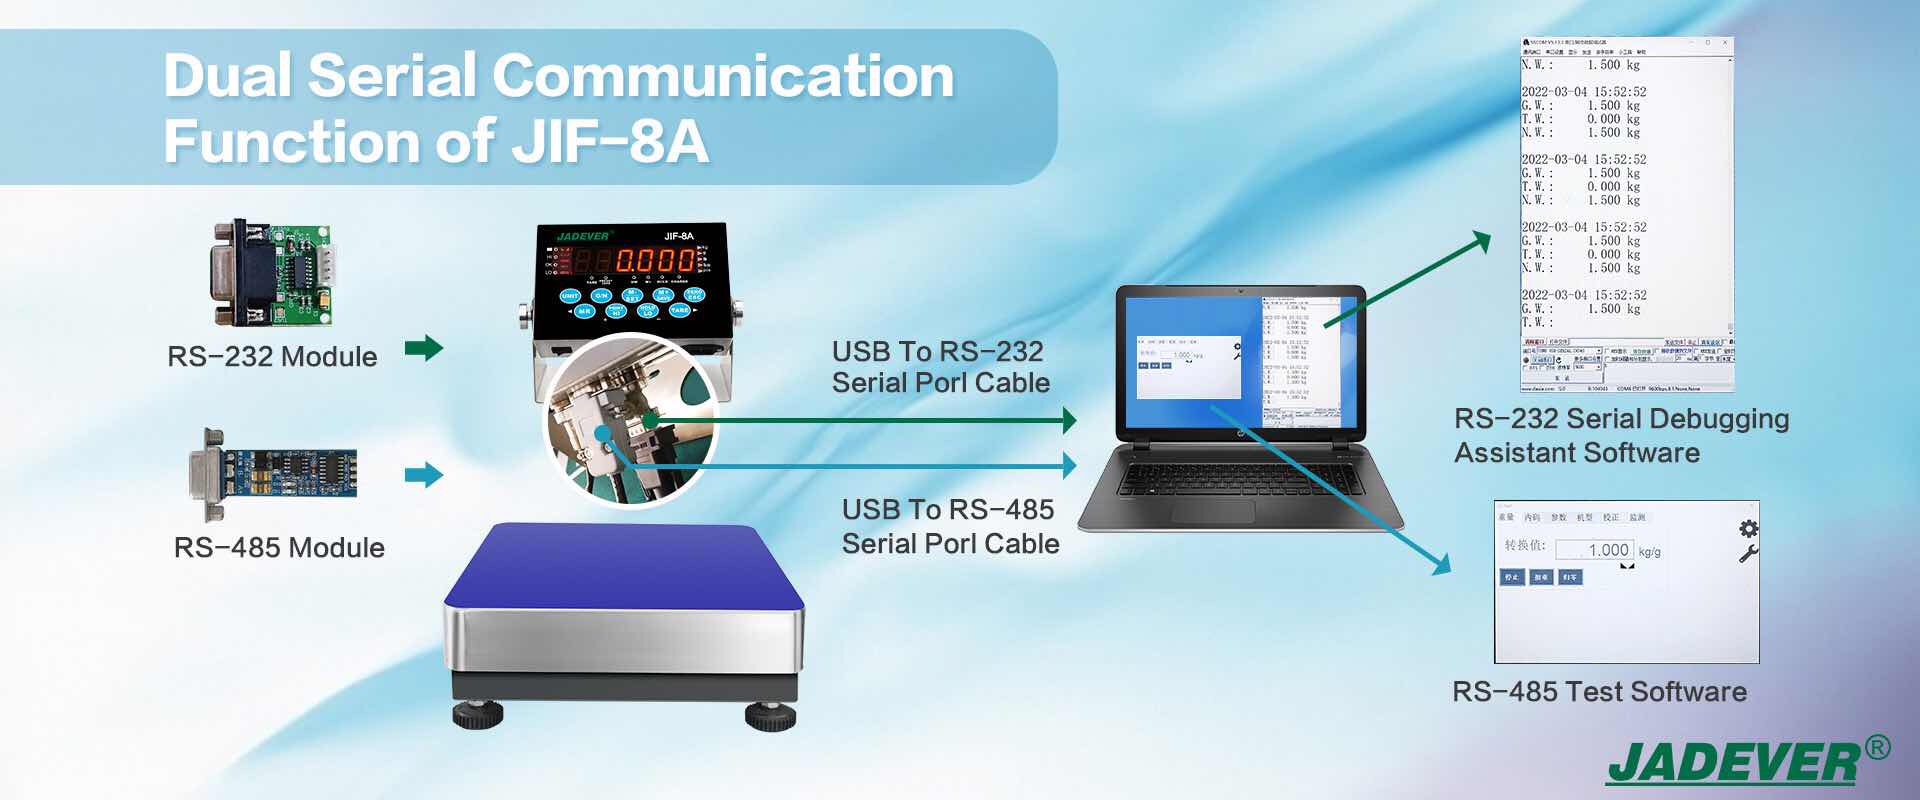 JIF-8A'nın ikili seri iletişim işlevi